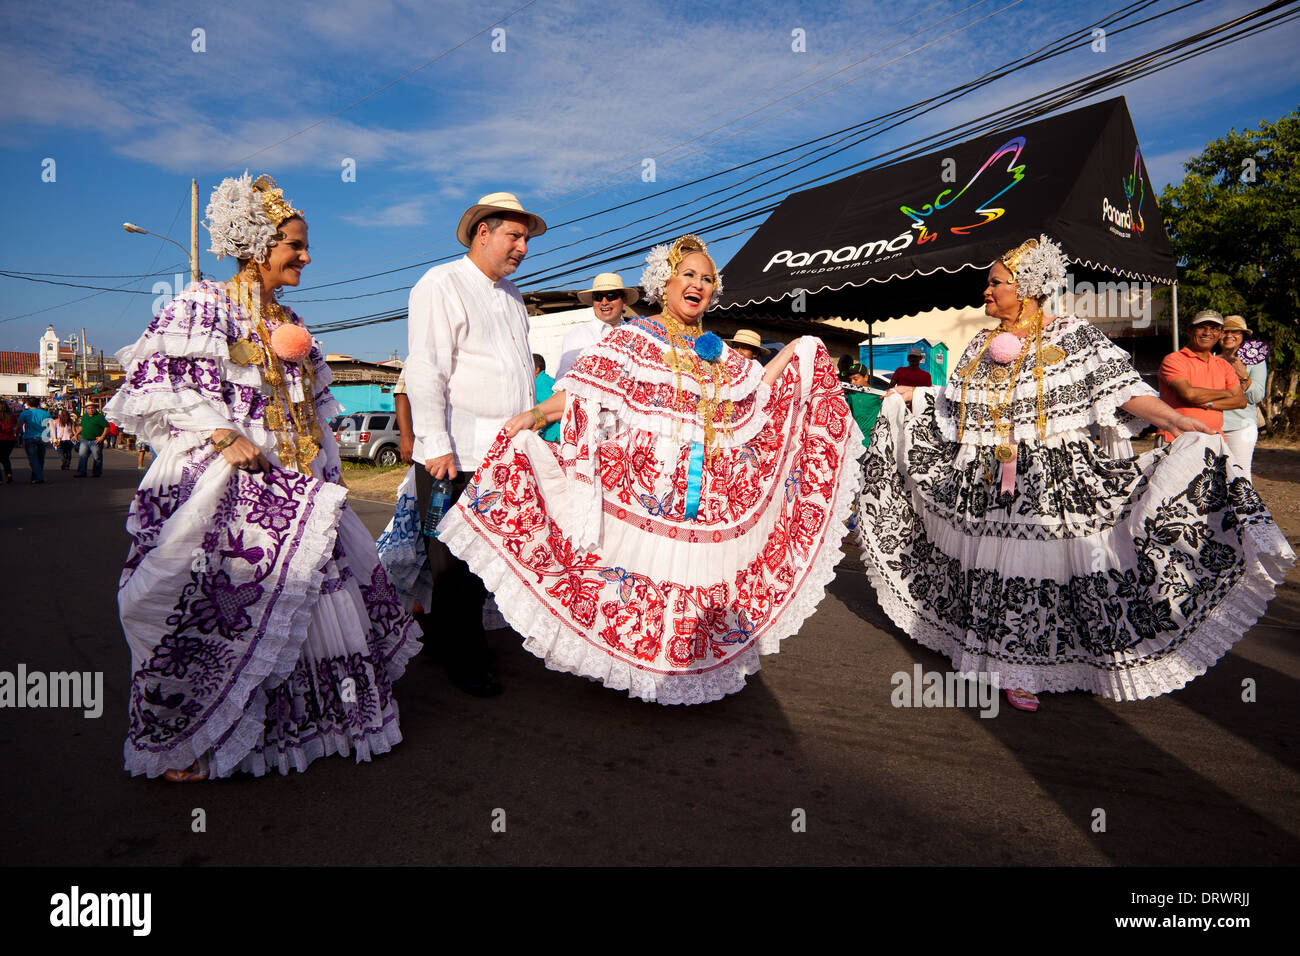 The festival 'Mil Polleras' (Thousand polleras) in Las Tablas, Los Santos province, Republic of Panama. Stock Photo